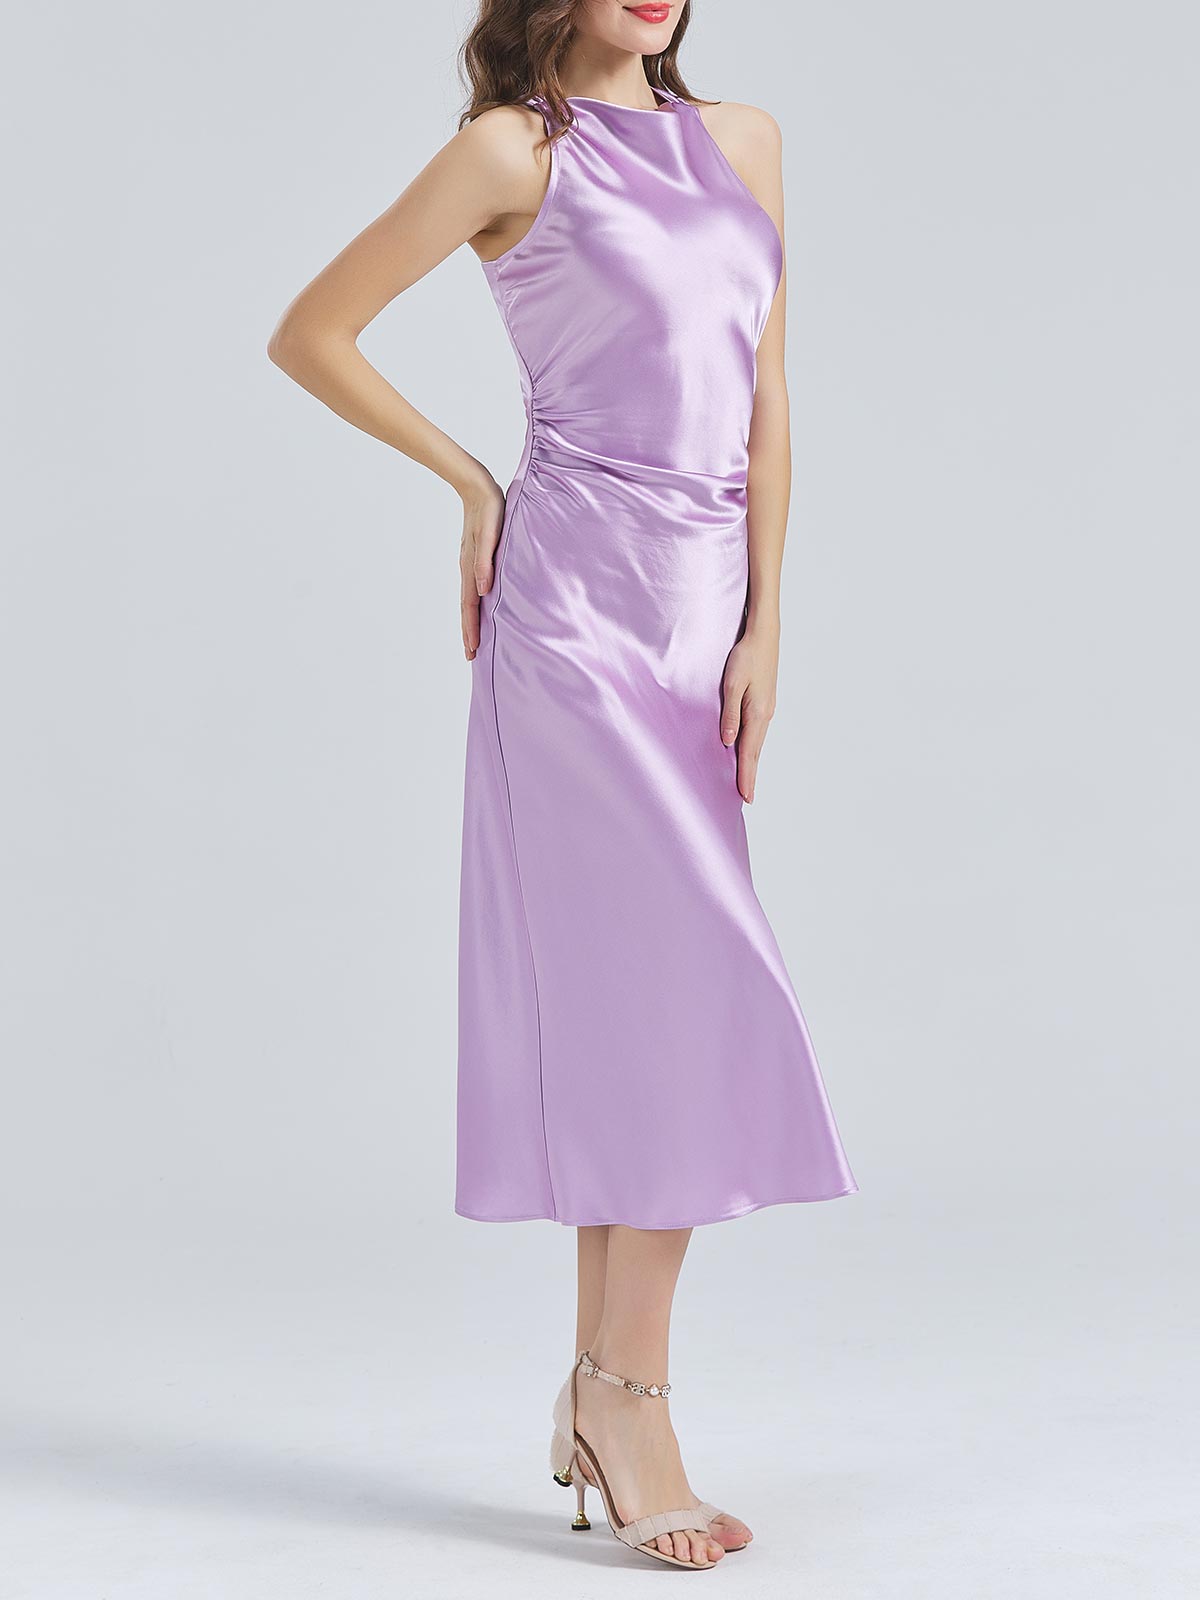 MissJophiel Acetat-Satin mit hohem Ausschnitt, offener Rücken, Teelänge, halbformale Midi-Cocktailkleider, Hochzeitskleid